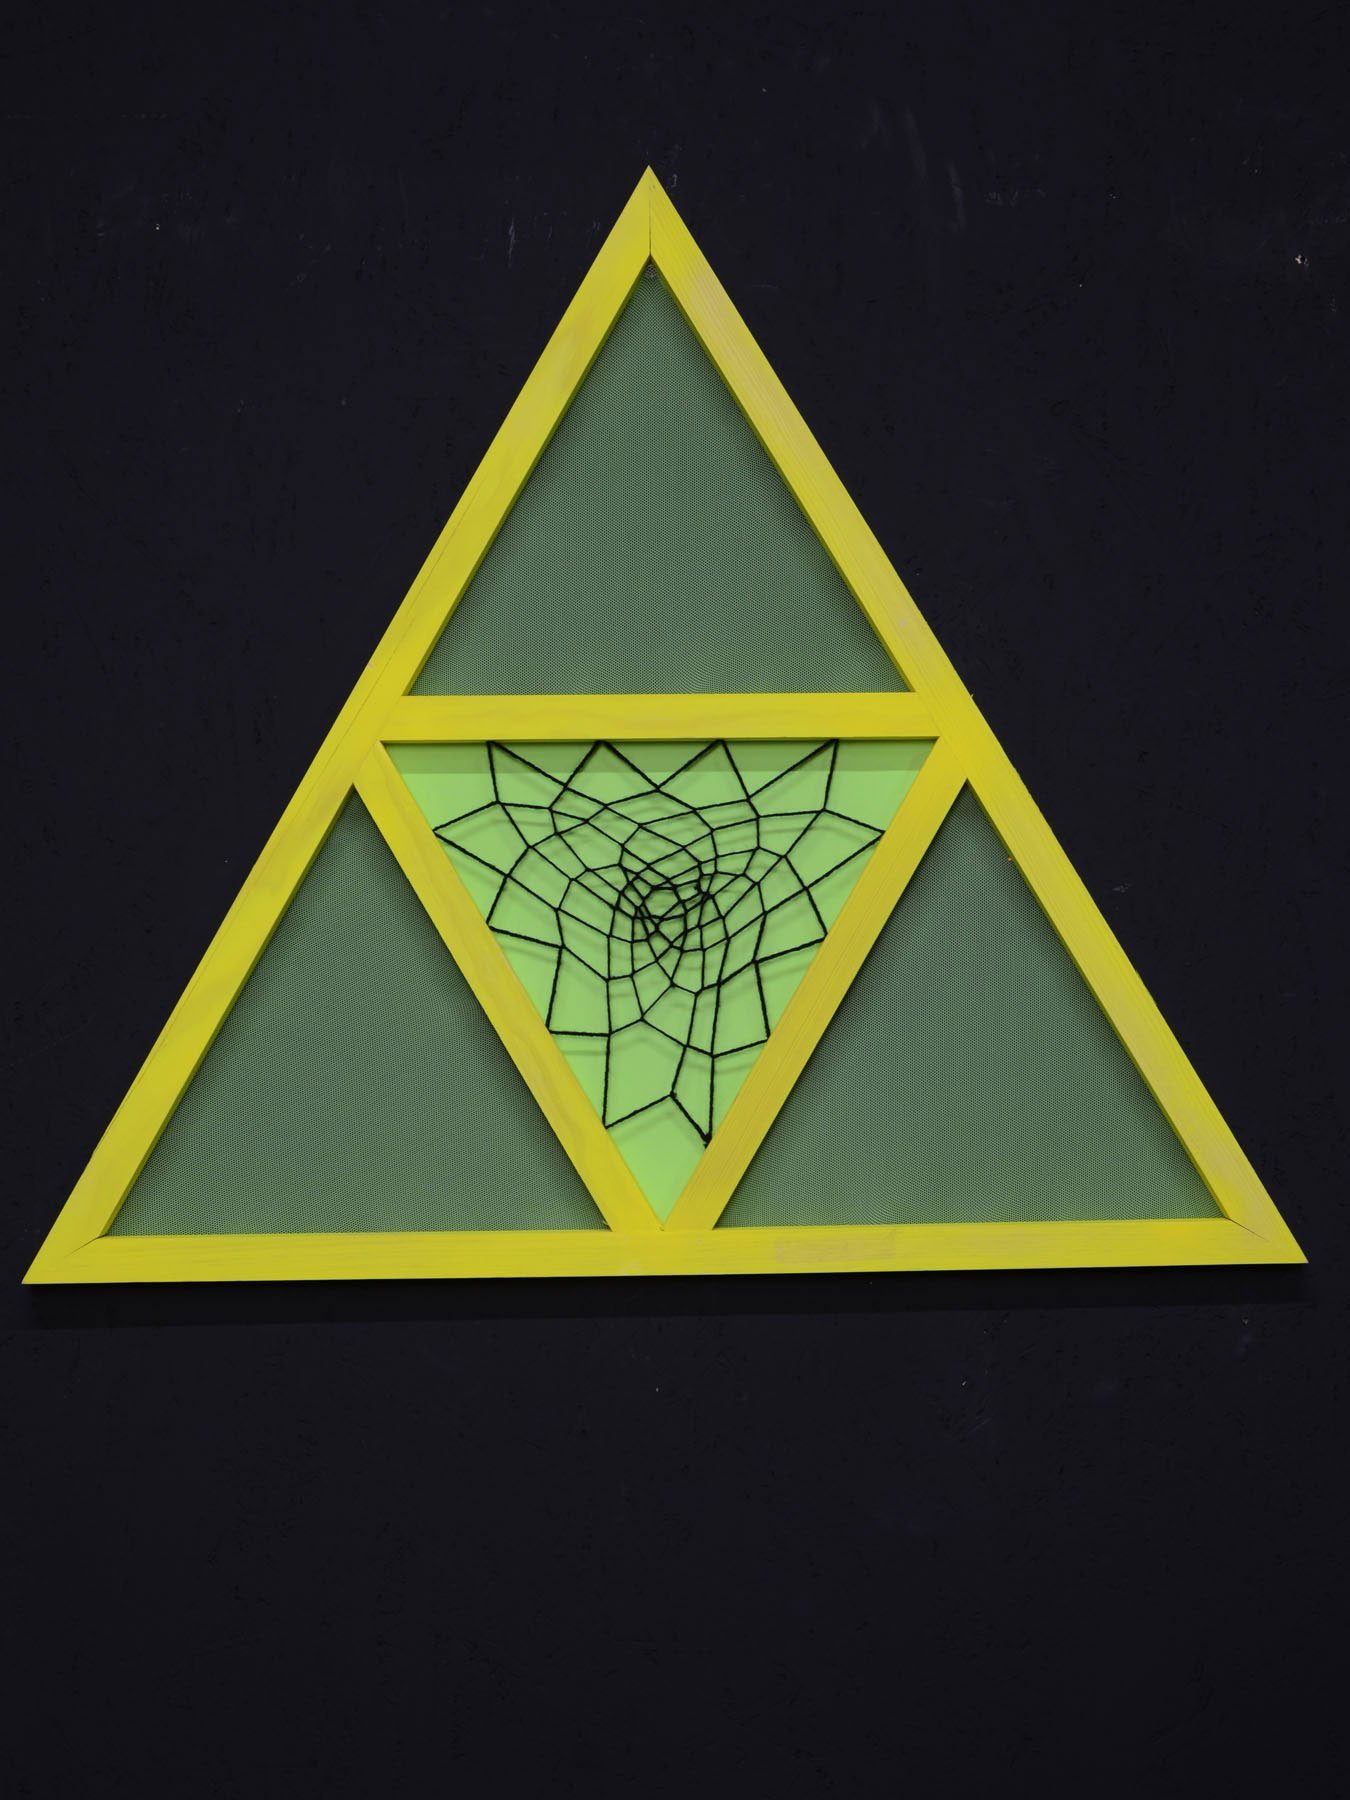 PSYWORK Dekoobjekt Schwarzlicht StringArt Mind Change "Yellow Dreamcatcher Triangle" 65cm, UV-aktiv, leuchtet unter Schwarzlicht